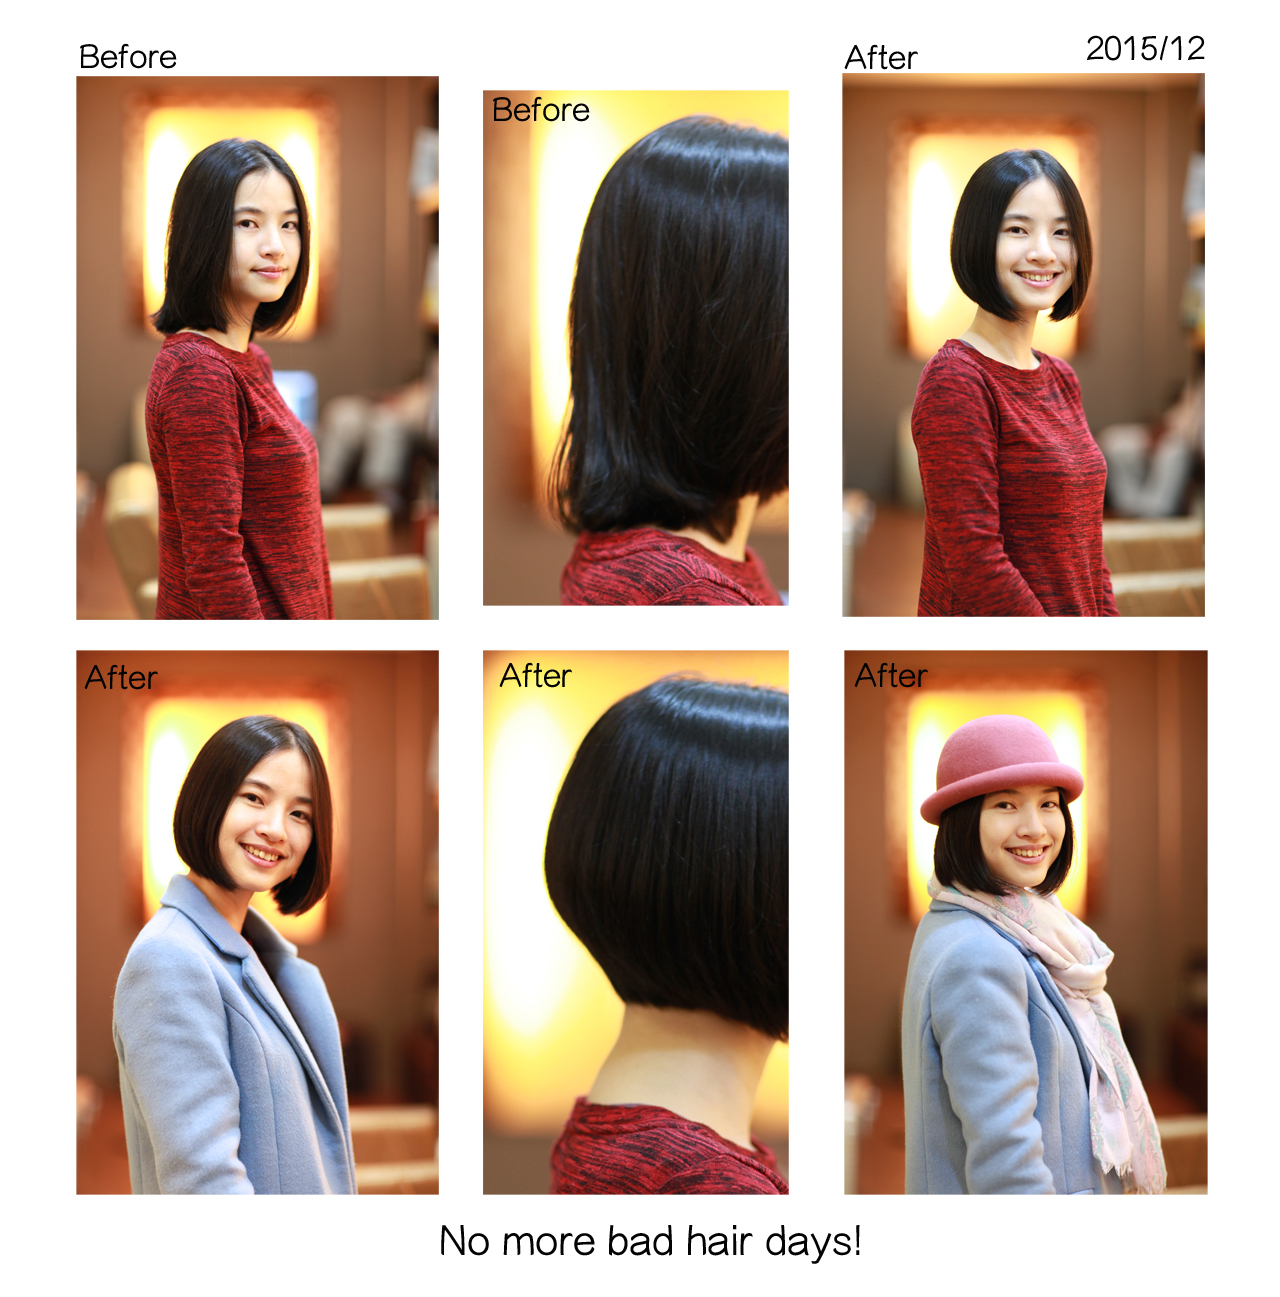 201511蘇小姐剪髮前後組圖1